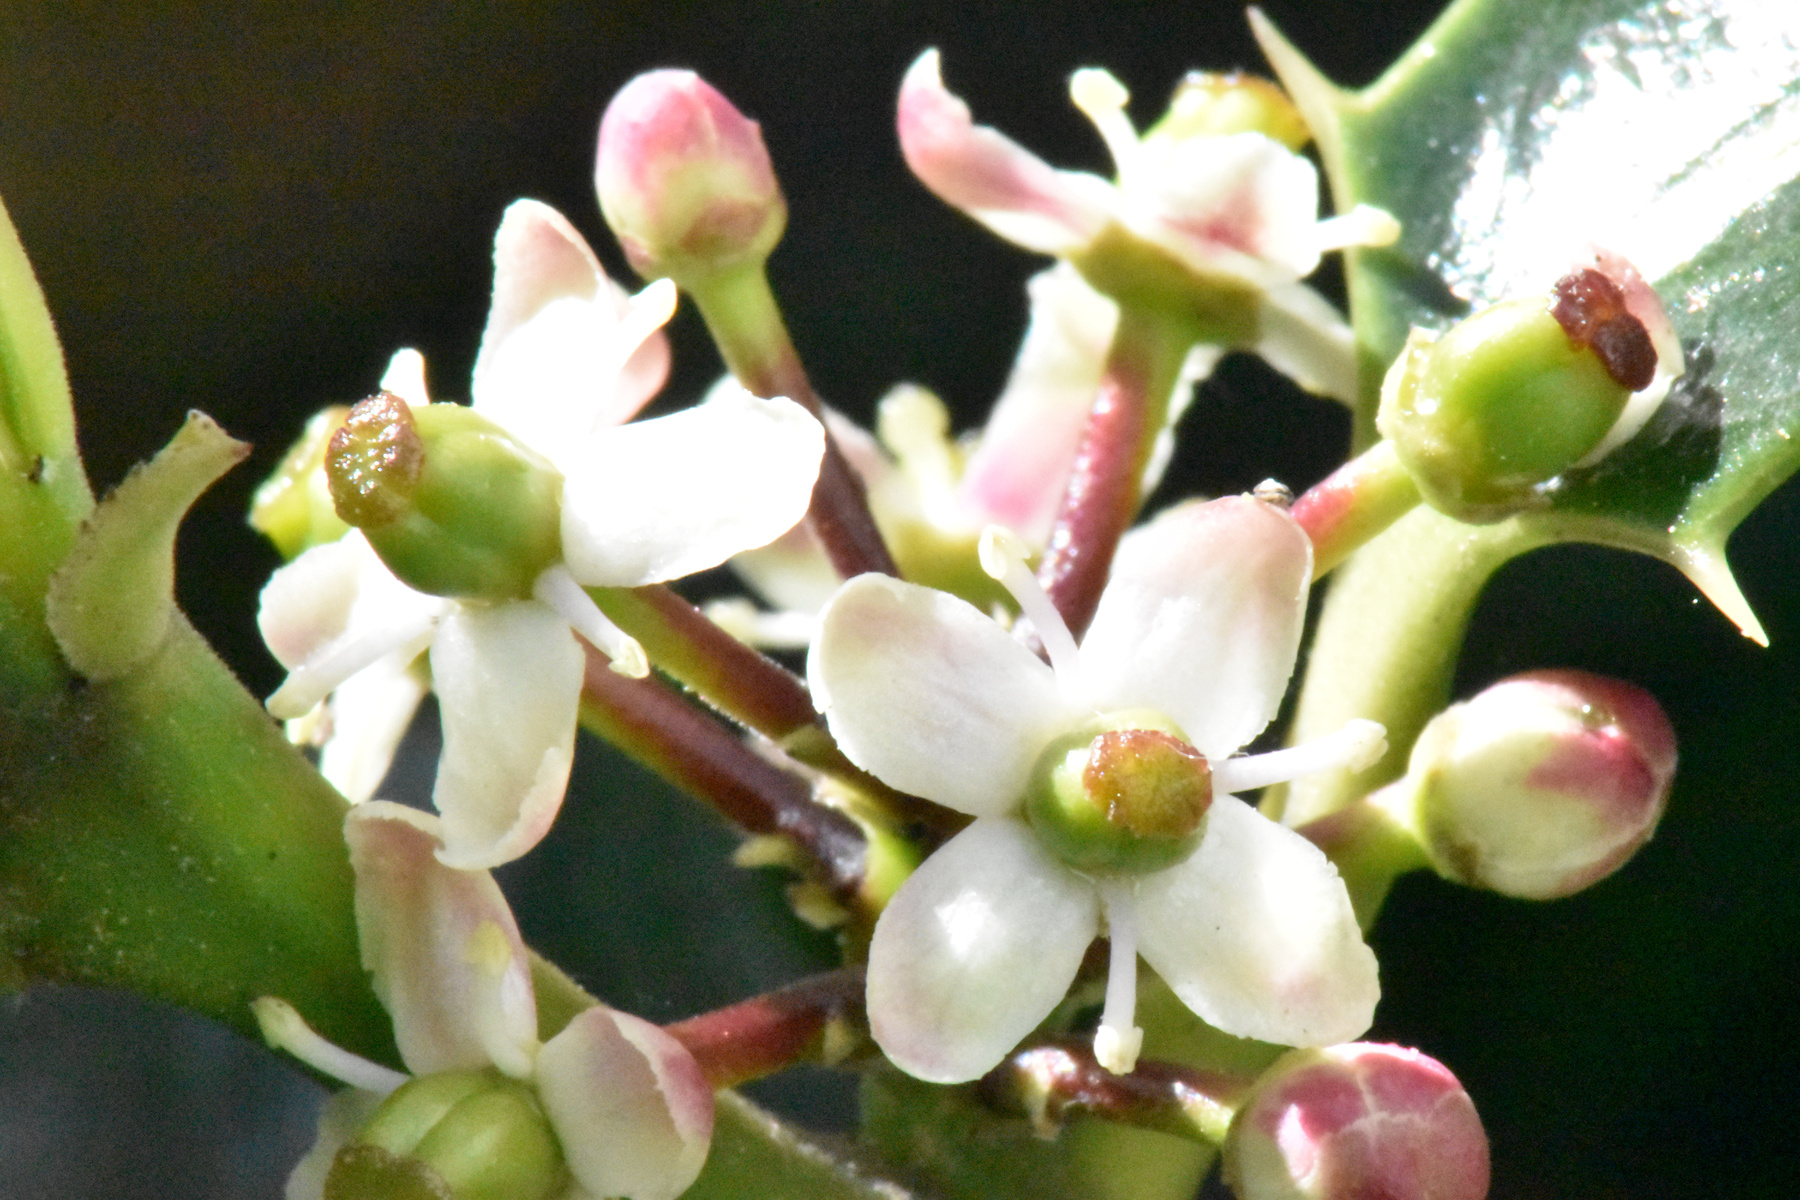 Holly flower (Ilex aquifolium)